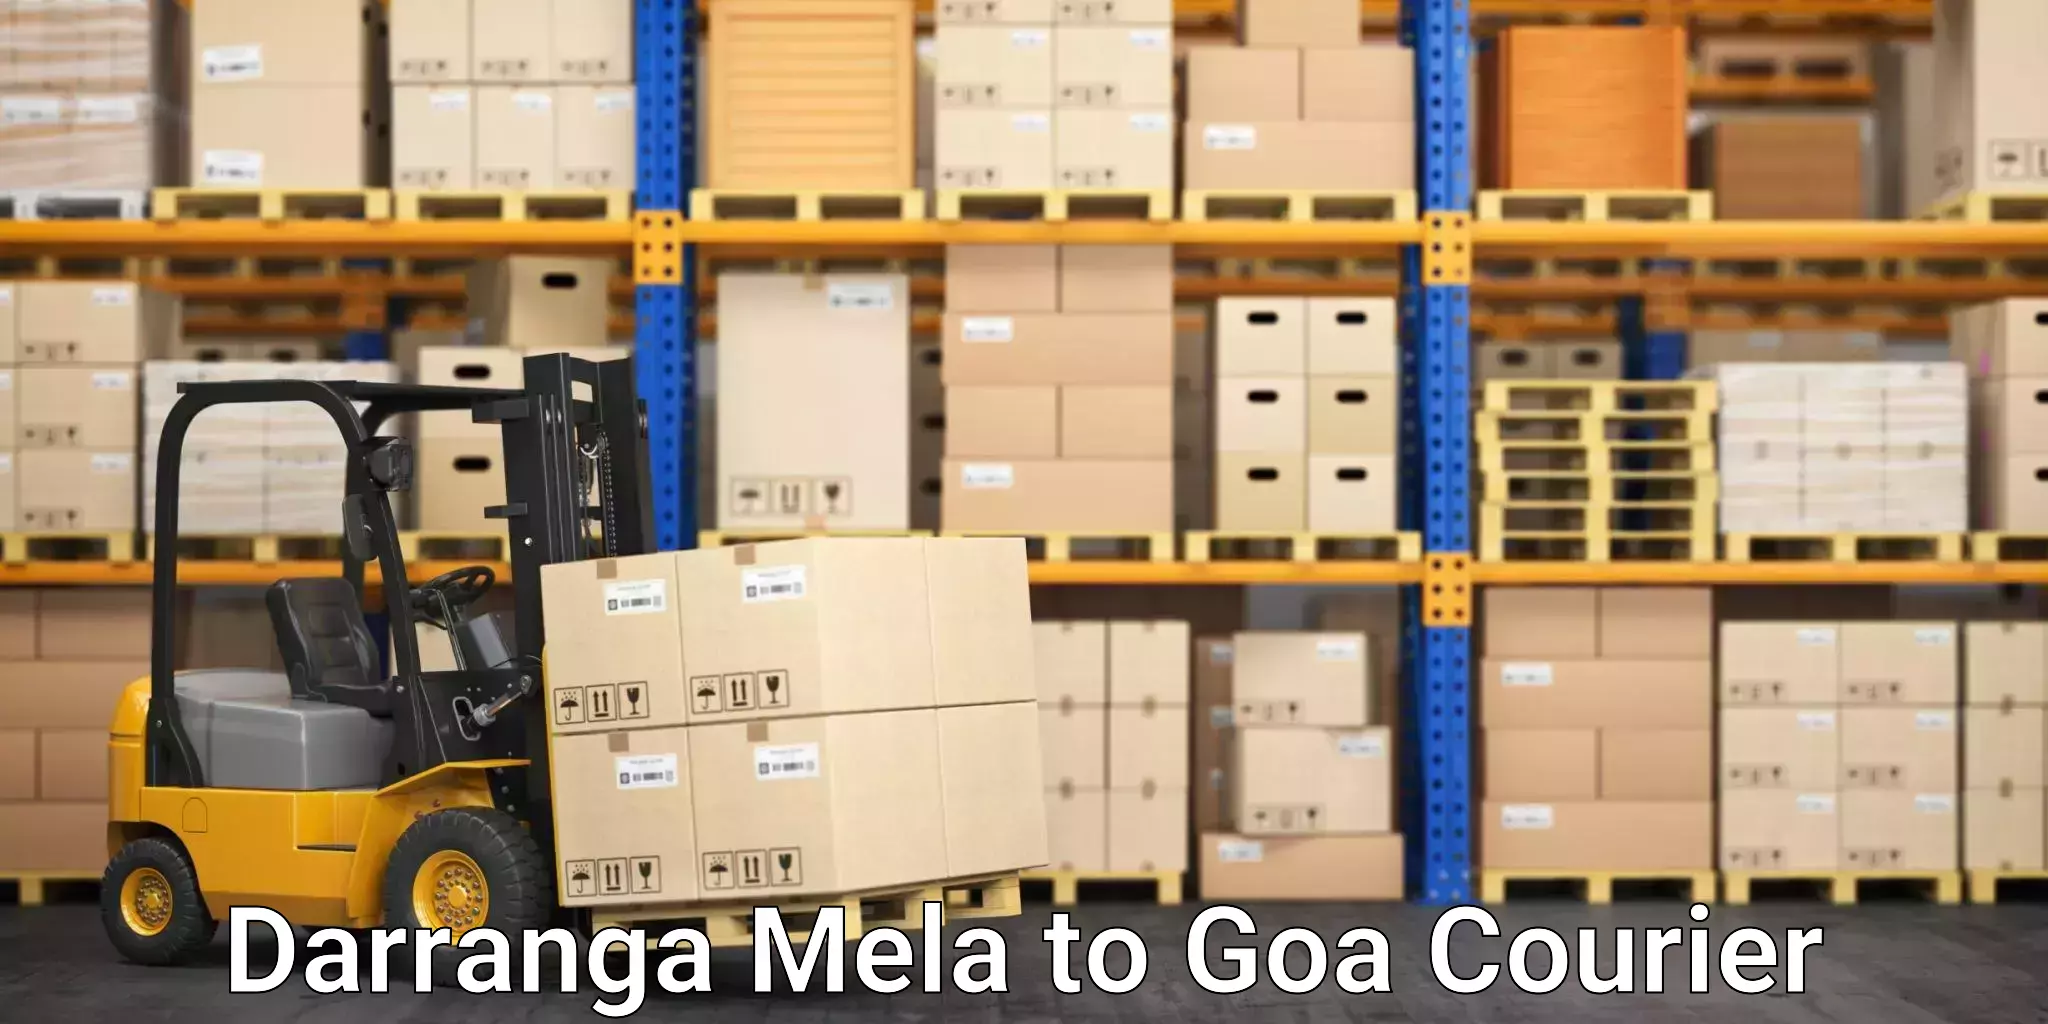 Professional courier services Darranga Mela to South Goa